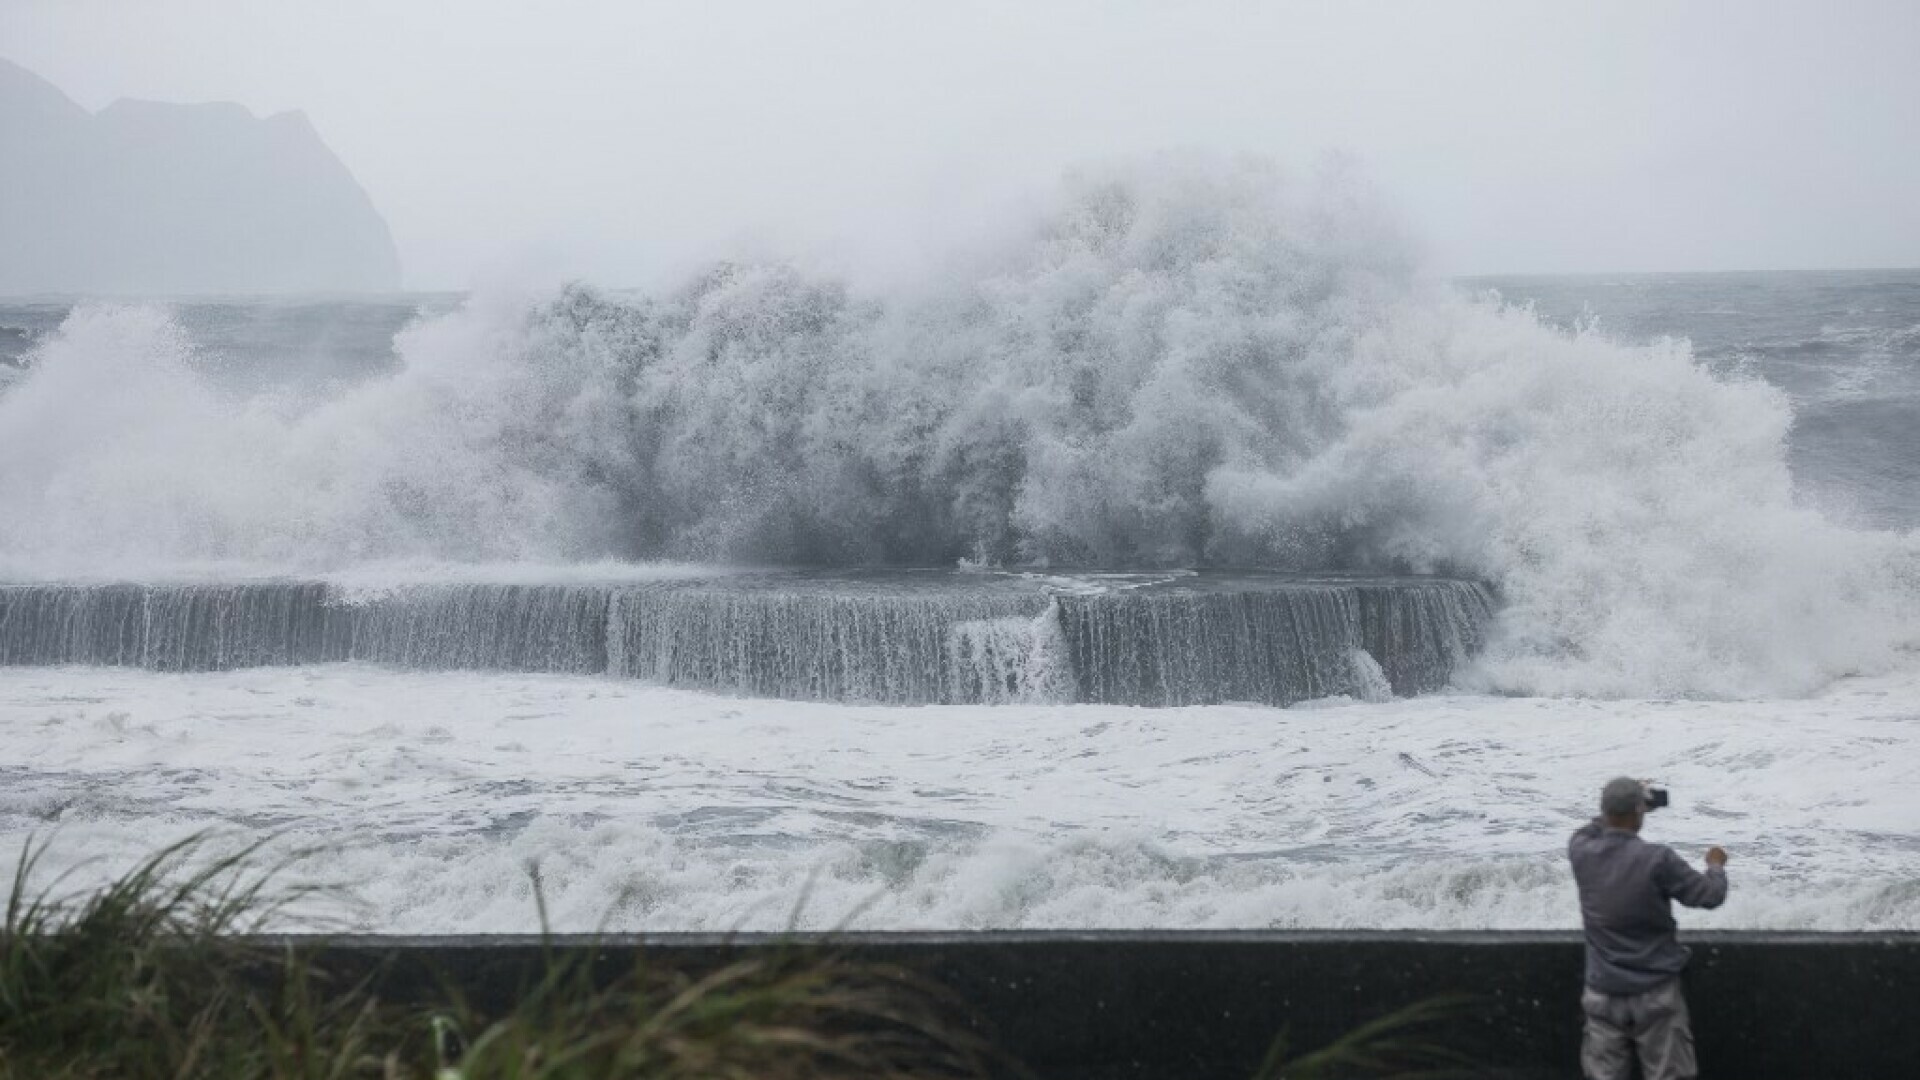 Tajvan se priprema za tajfun: Evakuirane tisuće ljudi, otkazani letovi i trajektne linije